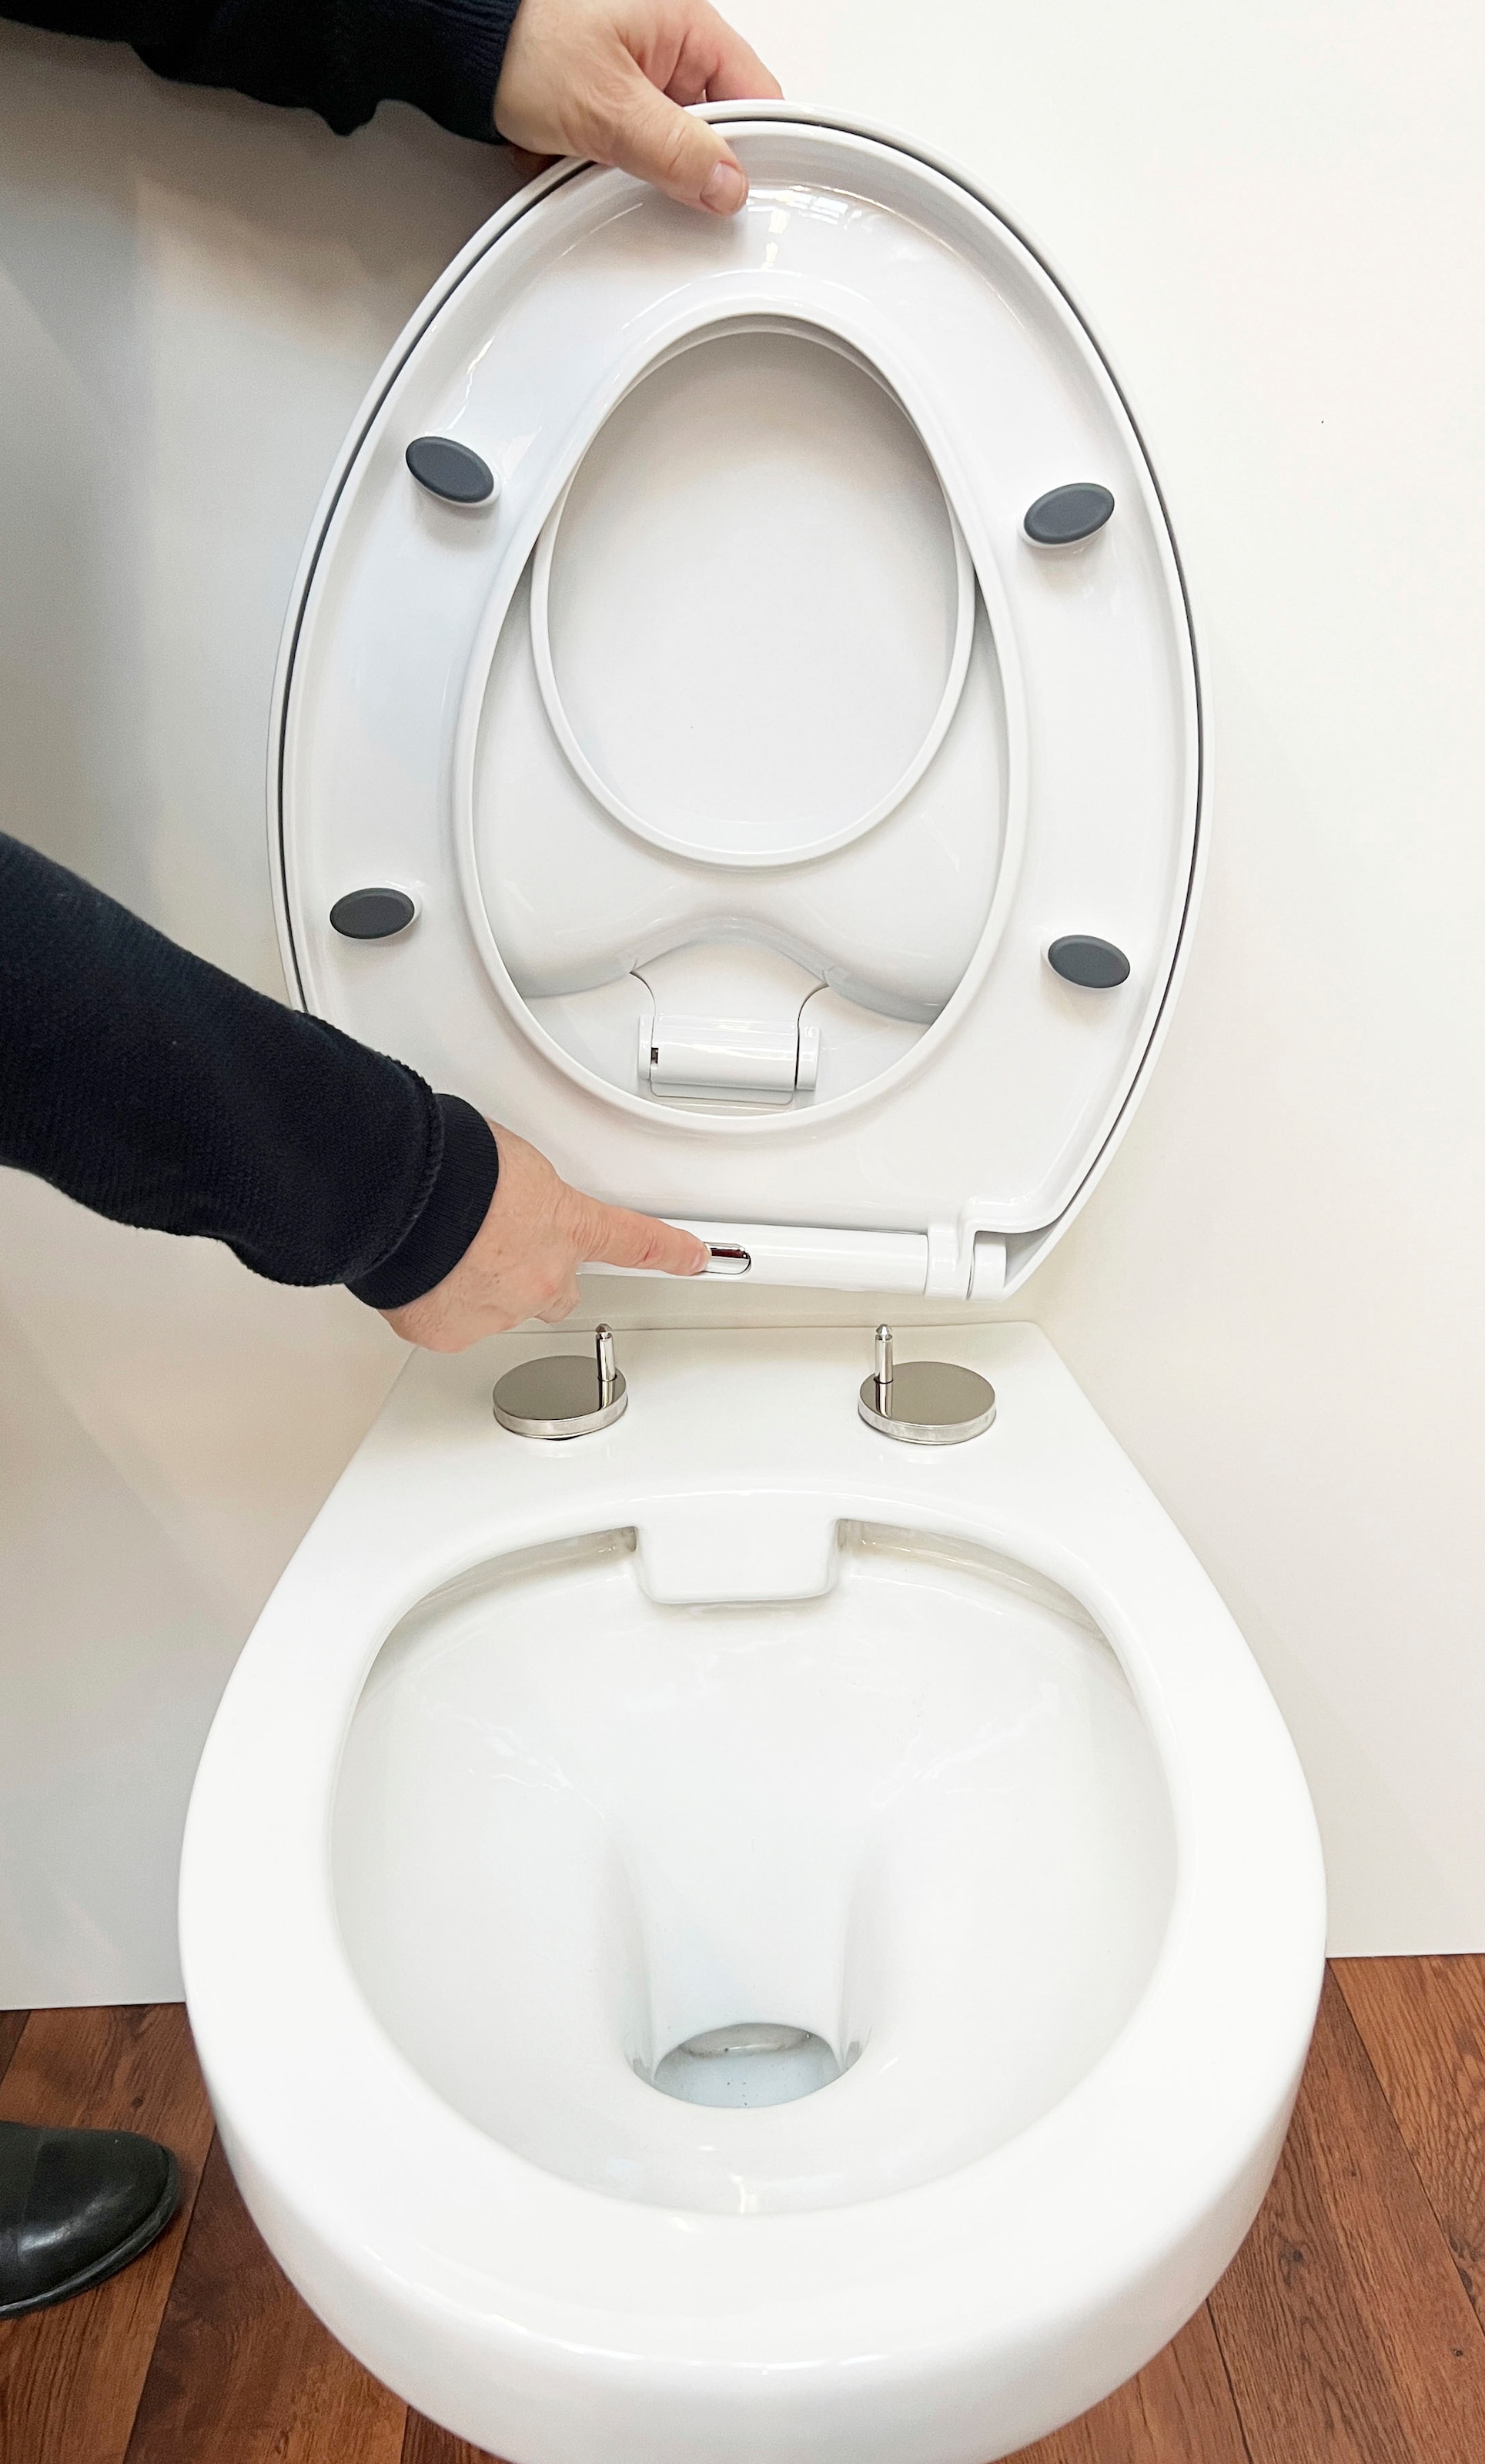 toilet seat cover – Kaufen Sie toilet seat cover mit kostenlosem